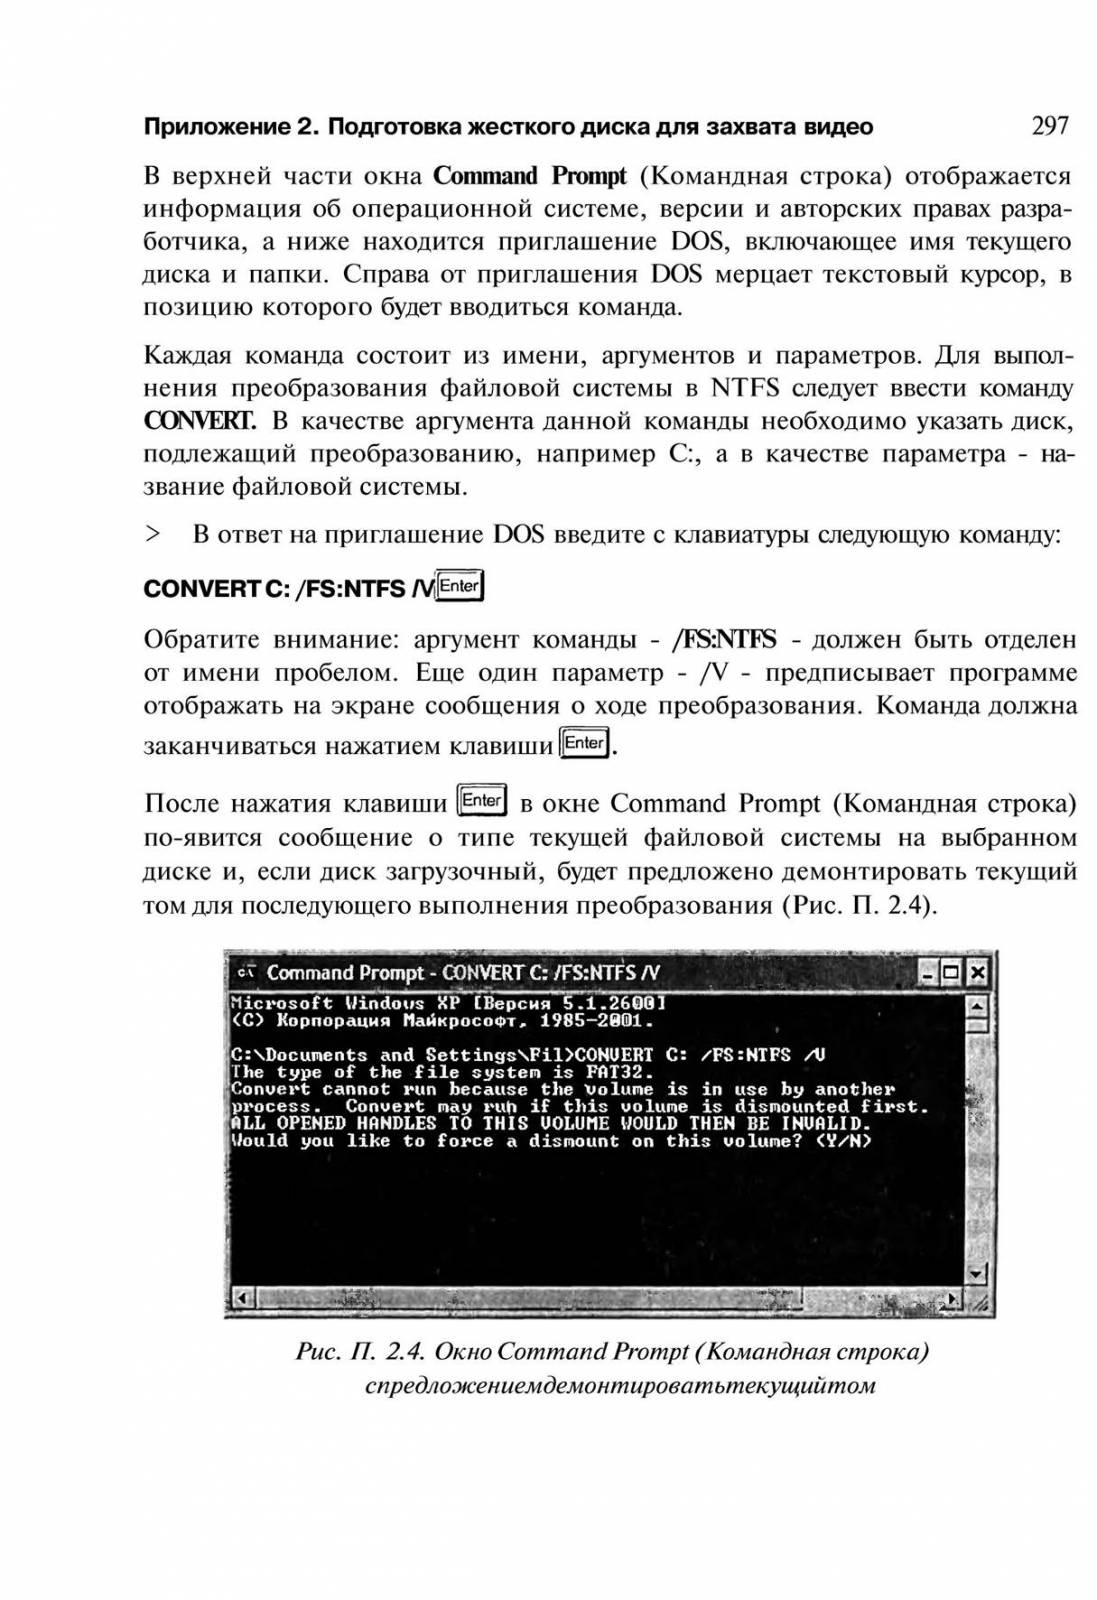 http://redaktori-uroki.3dn.ru/_ph/14/730745192.jpg